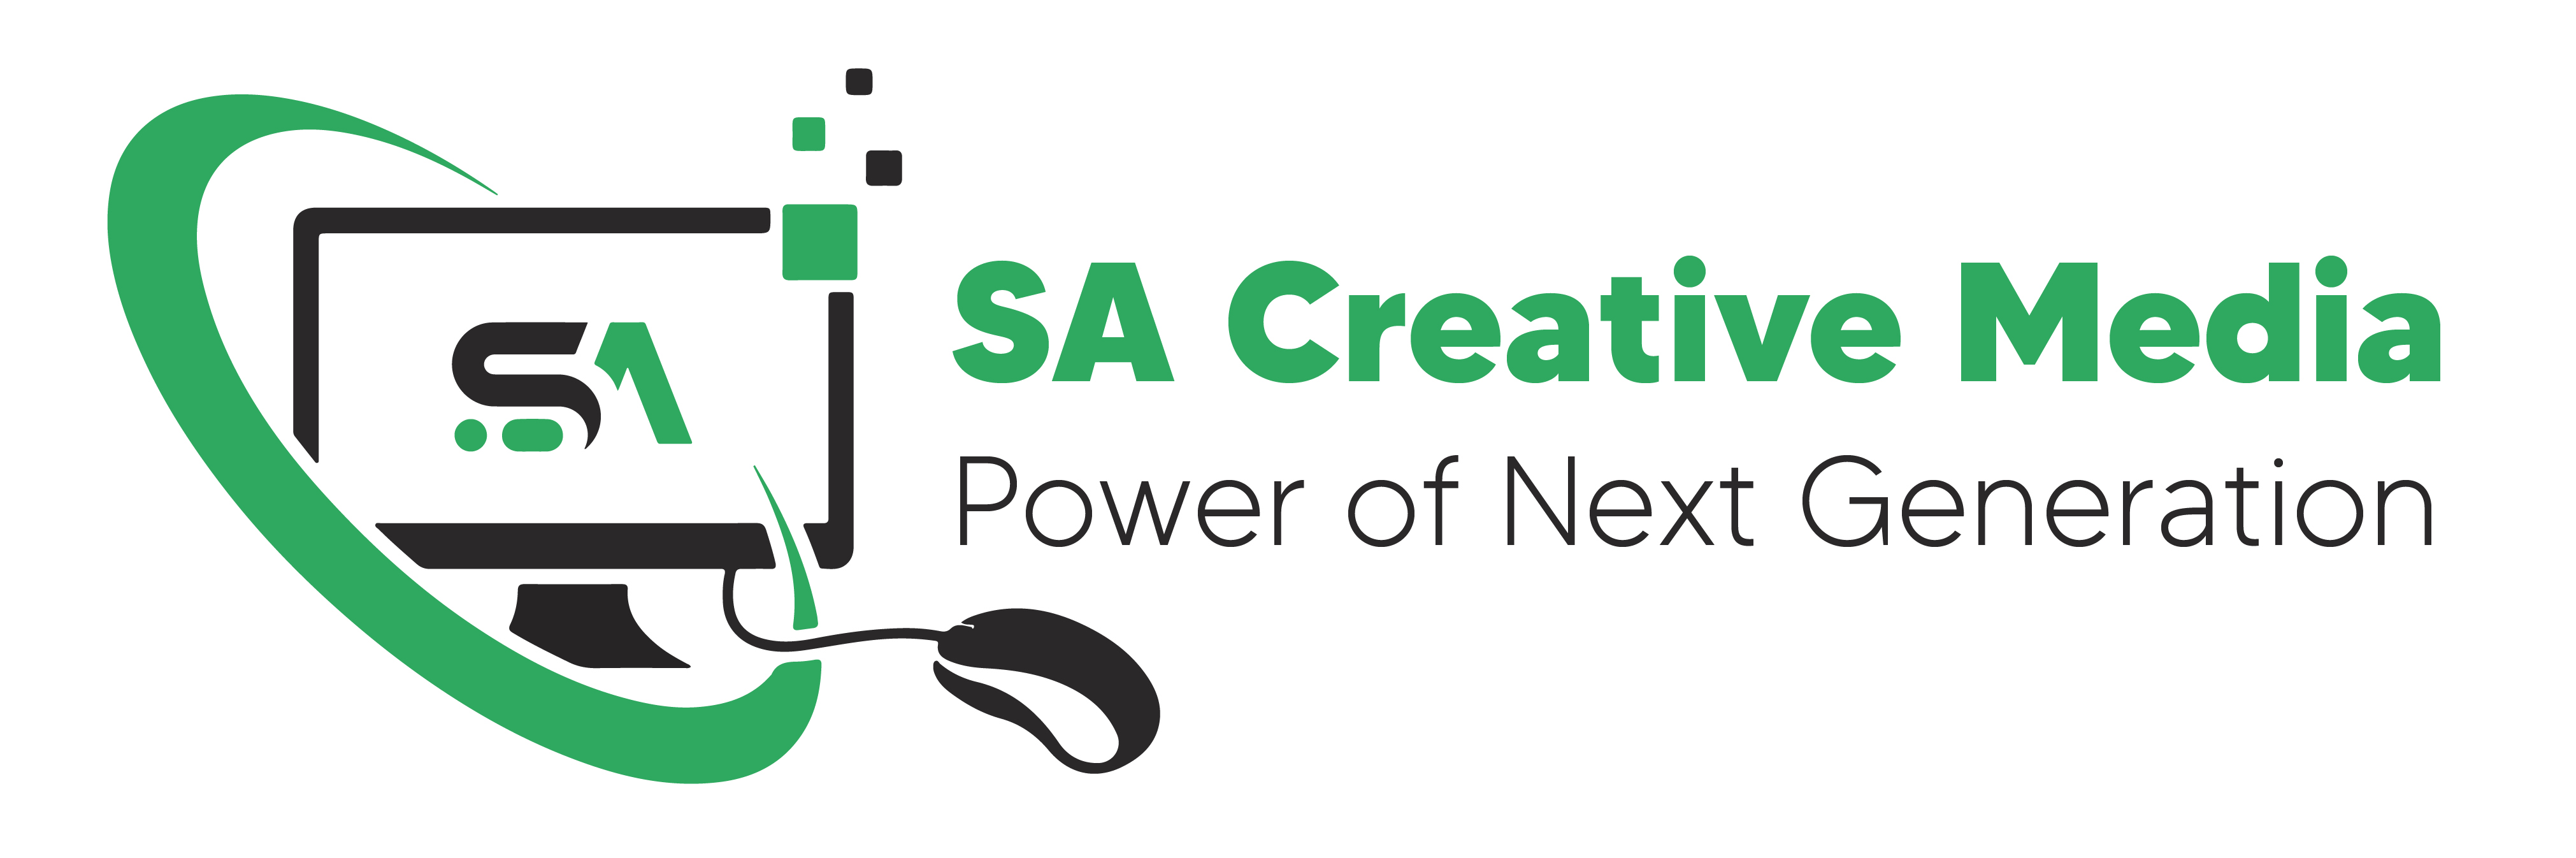 SA Creative Media Logo.png